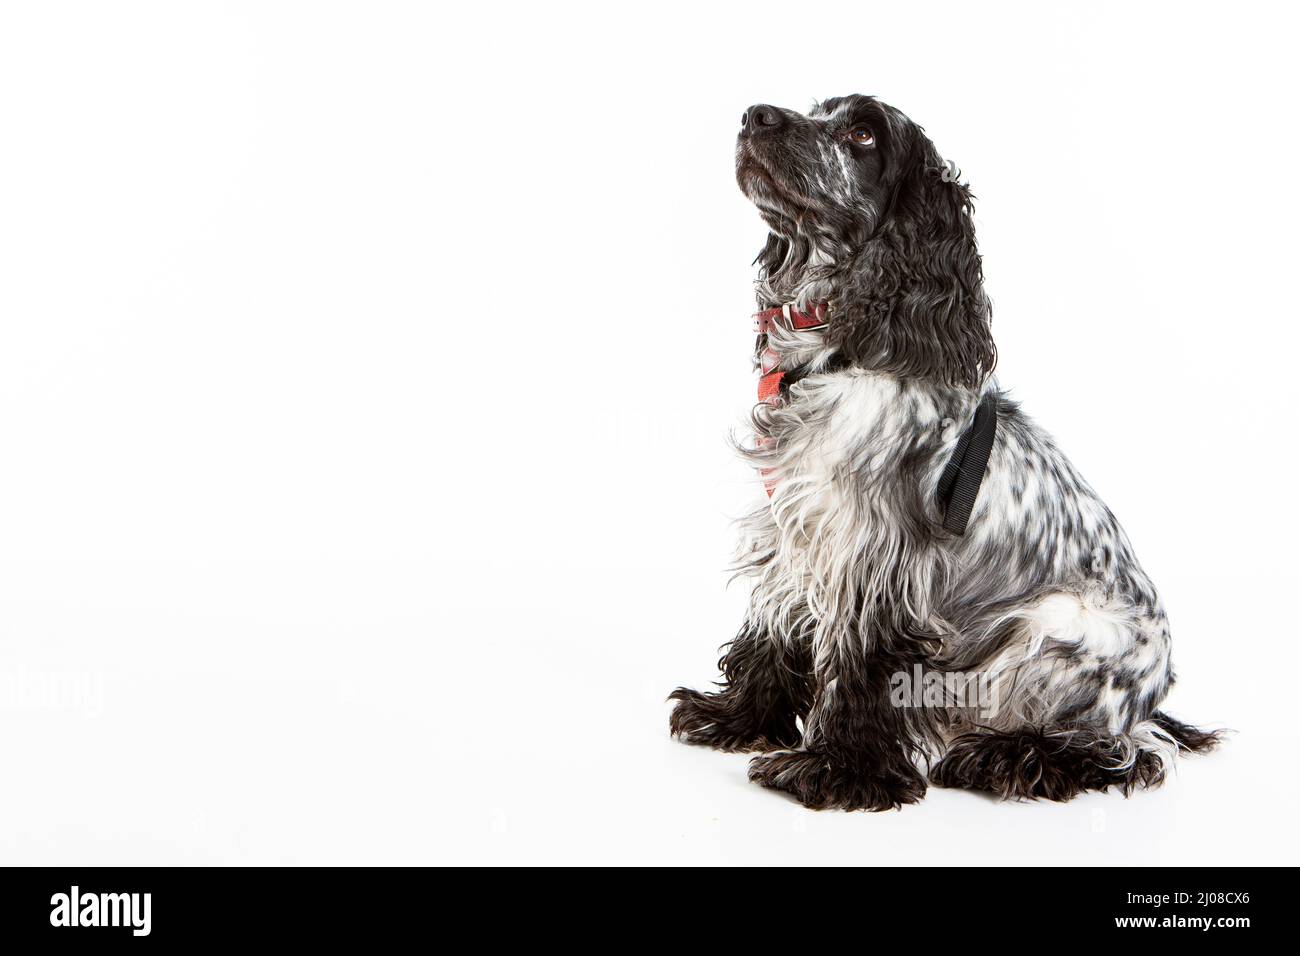 Englisch Springer Spaniel. Ganzkörper-Studioaufnahme eines englischen Springer Spaniel-Hundes vor weißem Hintergrund. Stockfoto